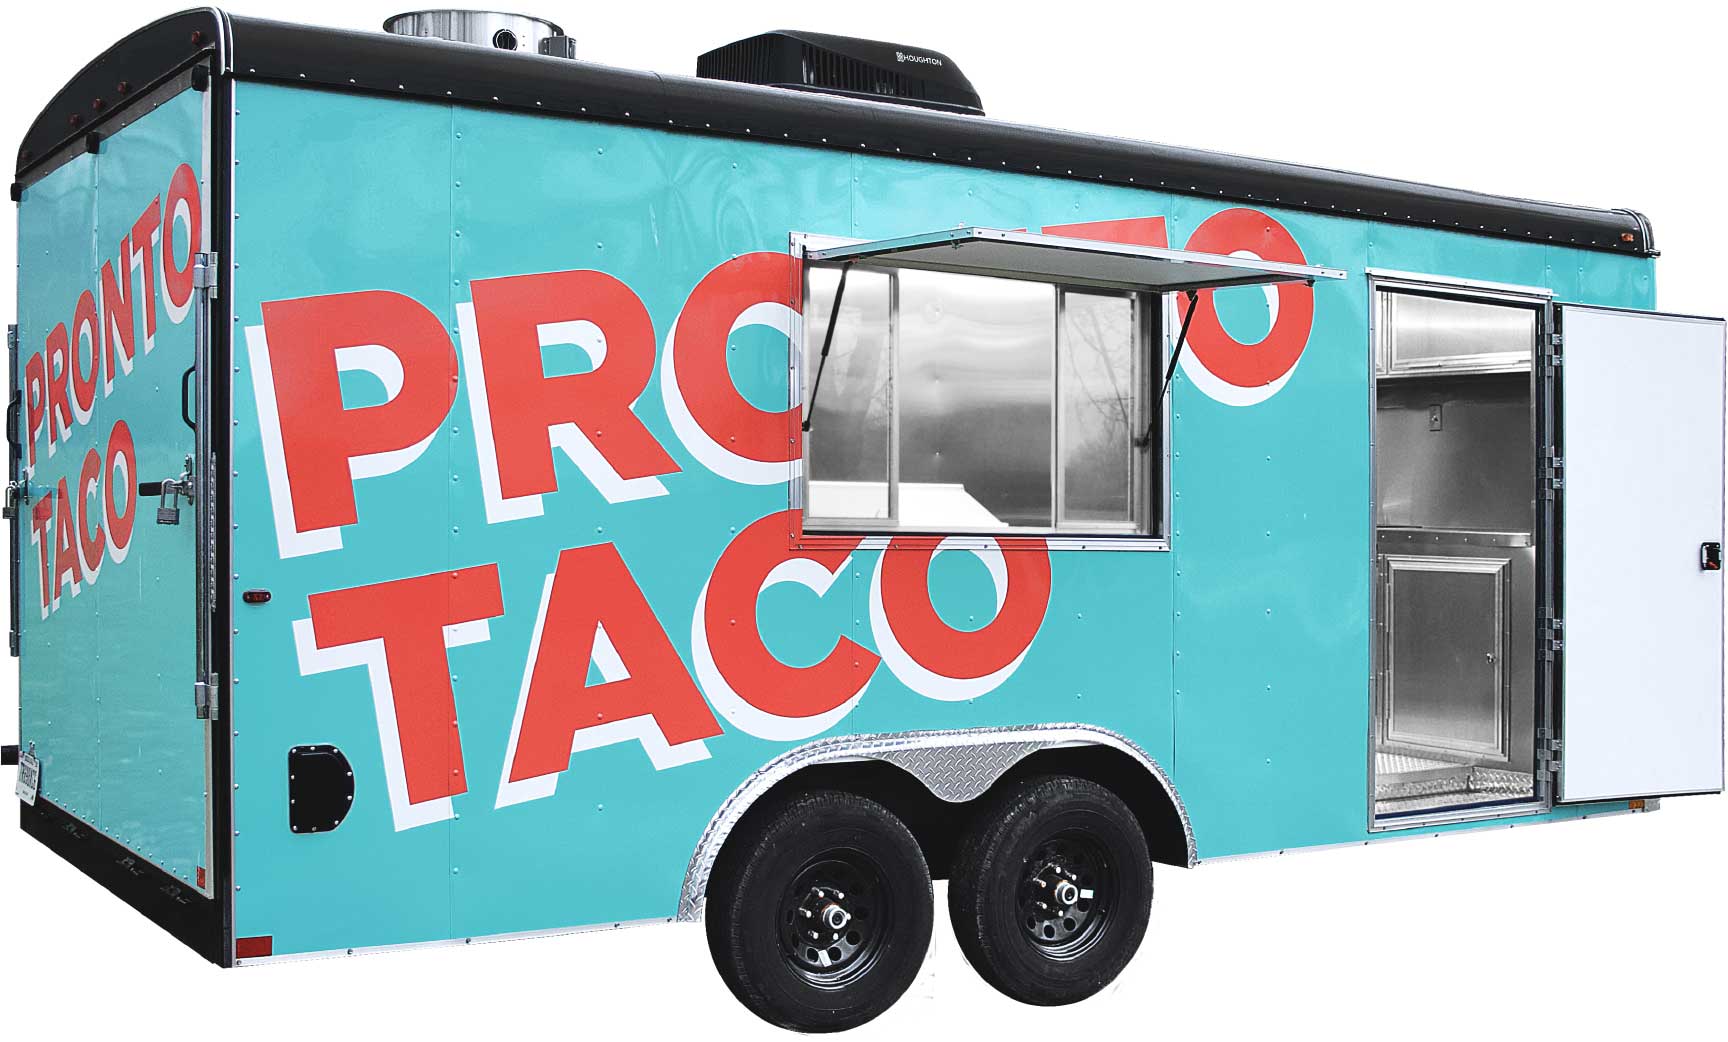 Pronto Taco mobile kitchen